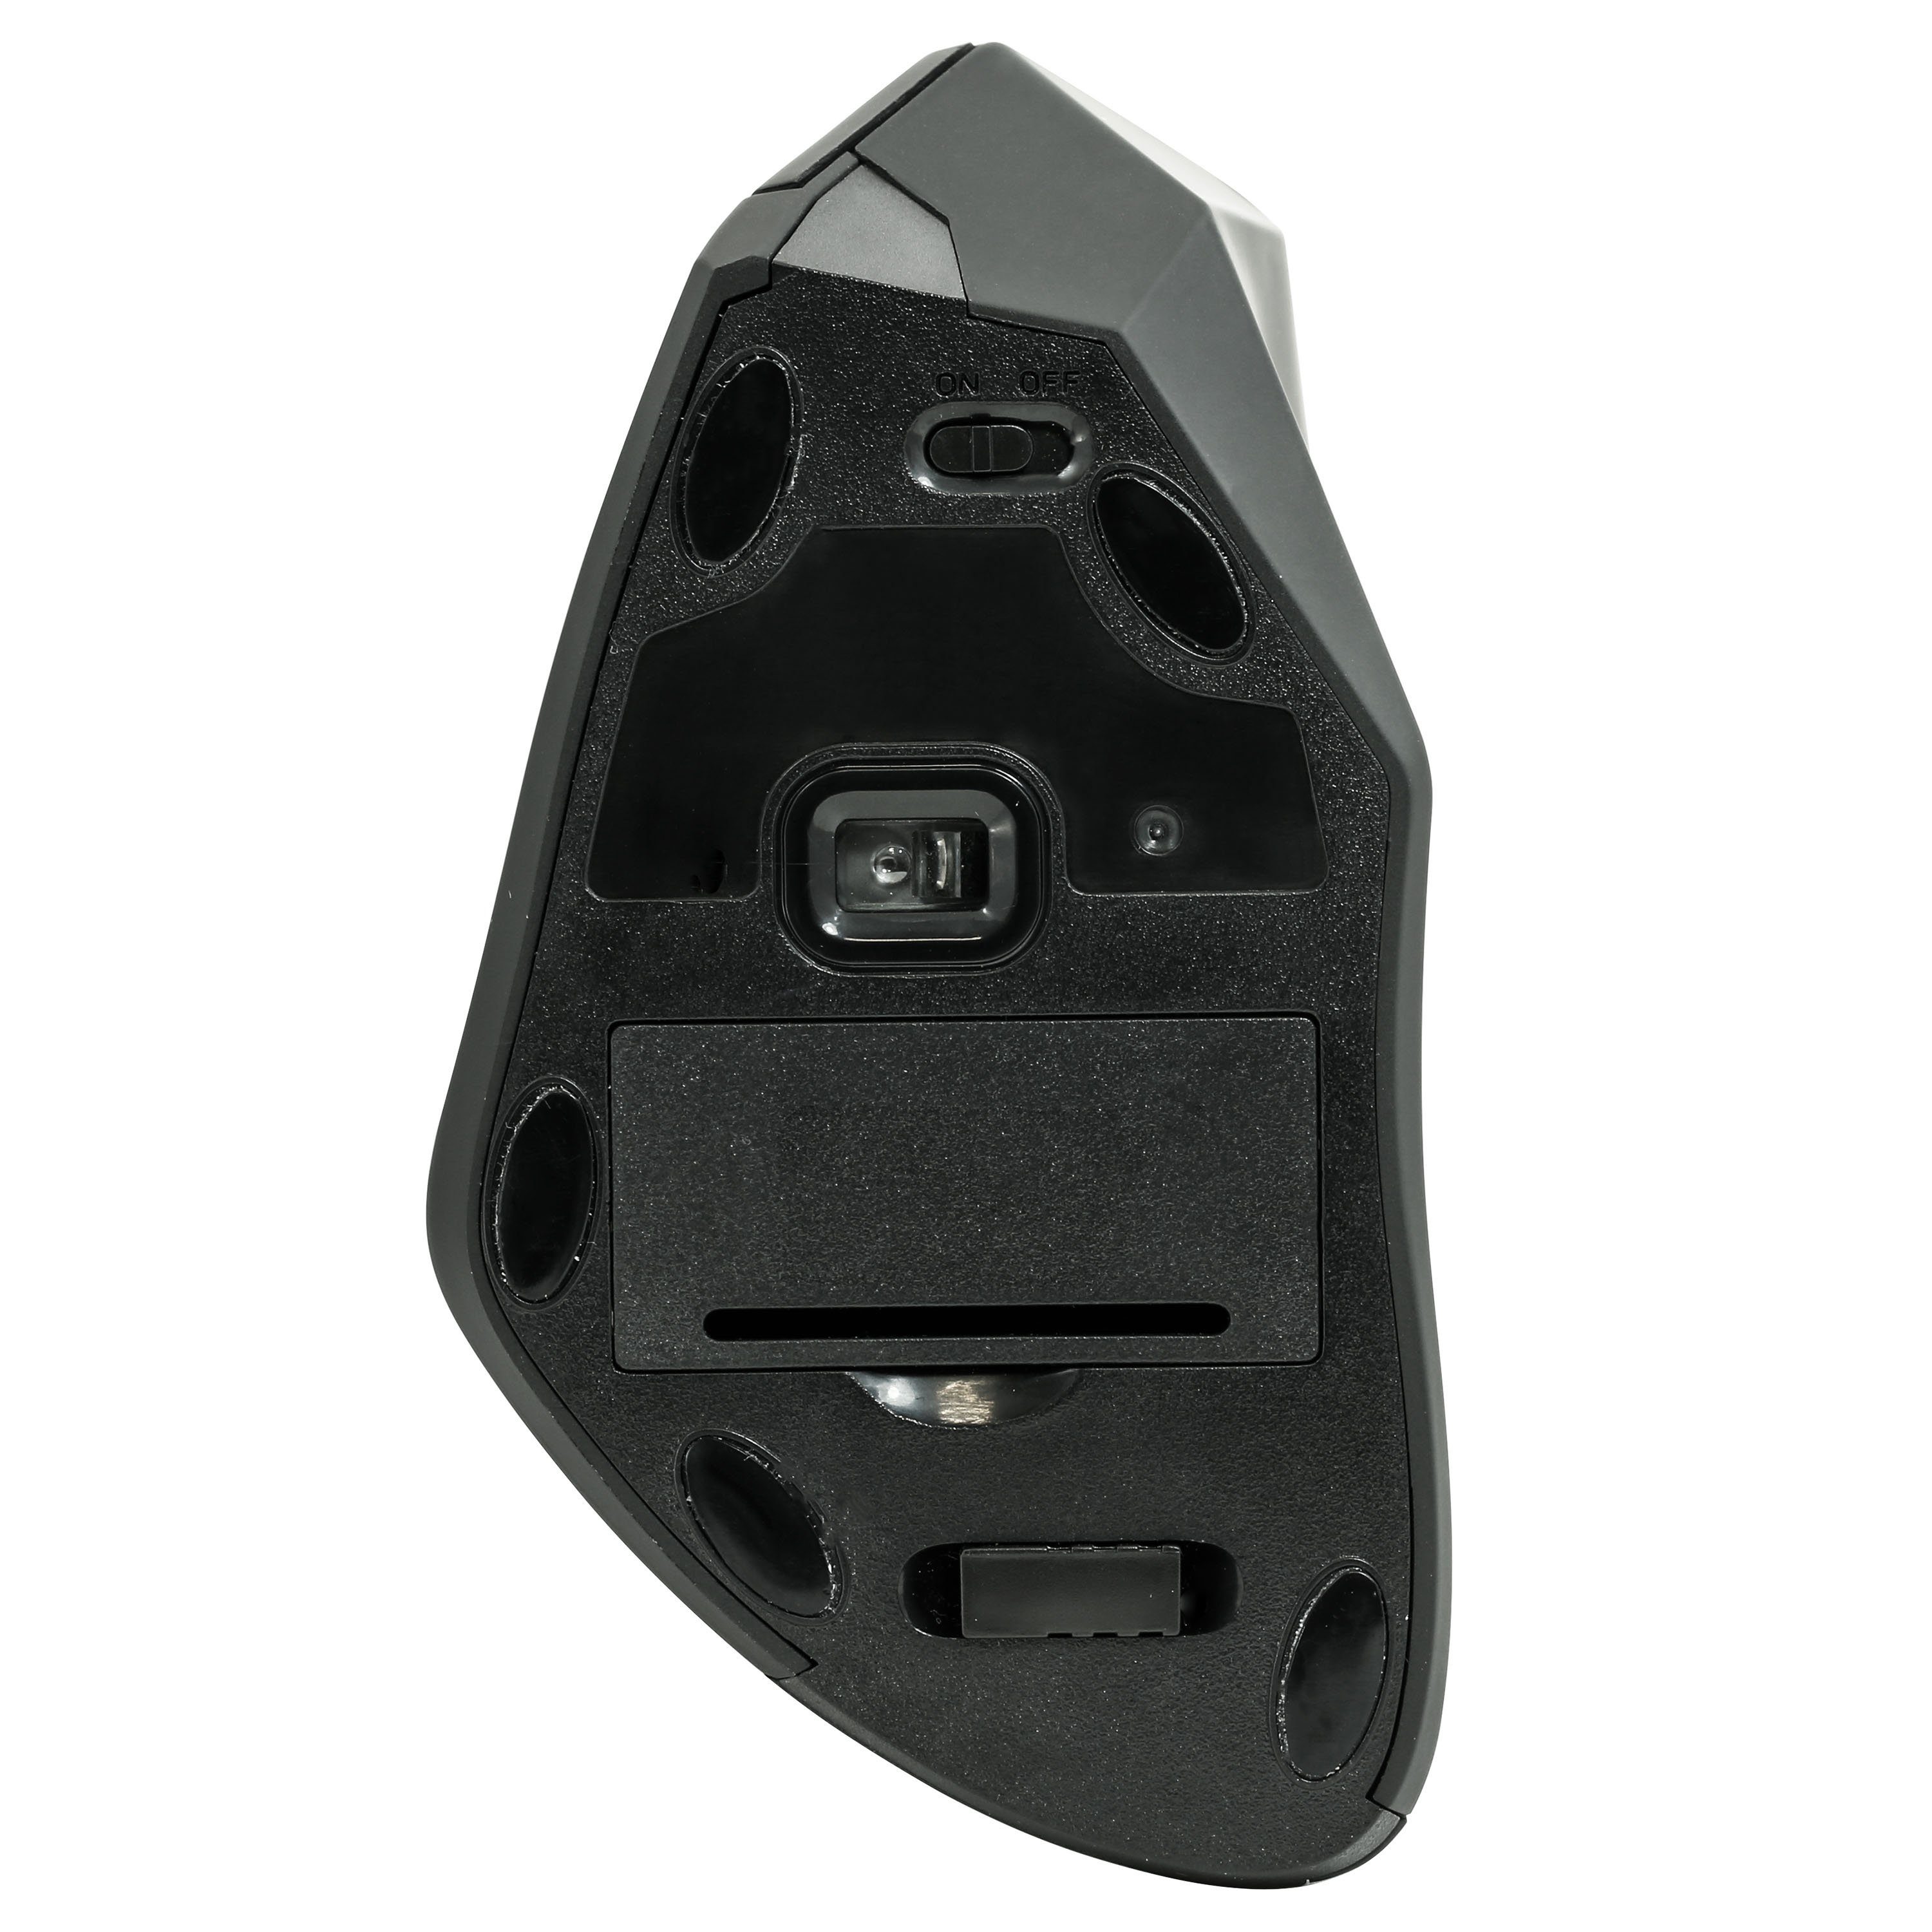 CSL ergonomische Maus (Funk, 2,4 ergonomische Mouse gegen Vertikal Maus-/Tennisarm Syndrom) RSI GHz